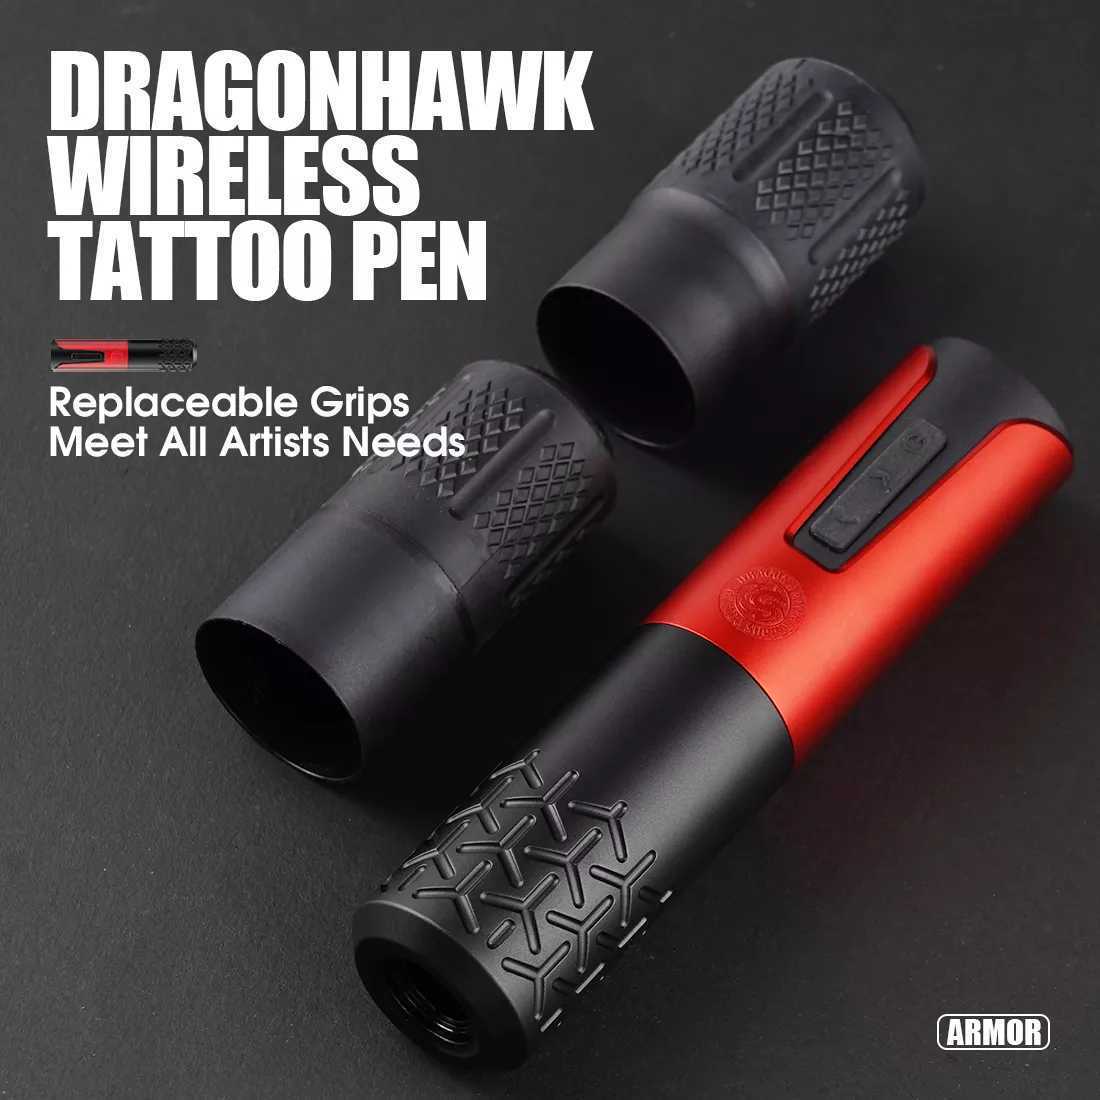 Dragon hawk ARMOR ワイヤレスタトゥーマシン tattoo machine 刺青